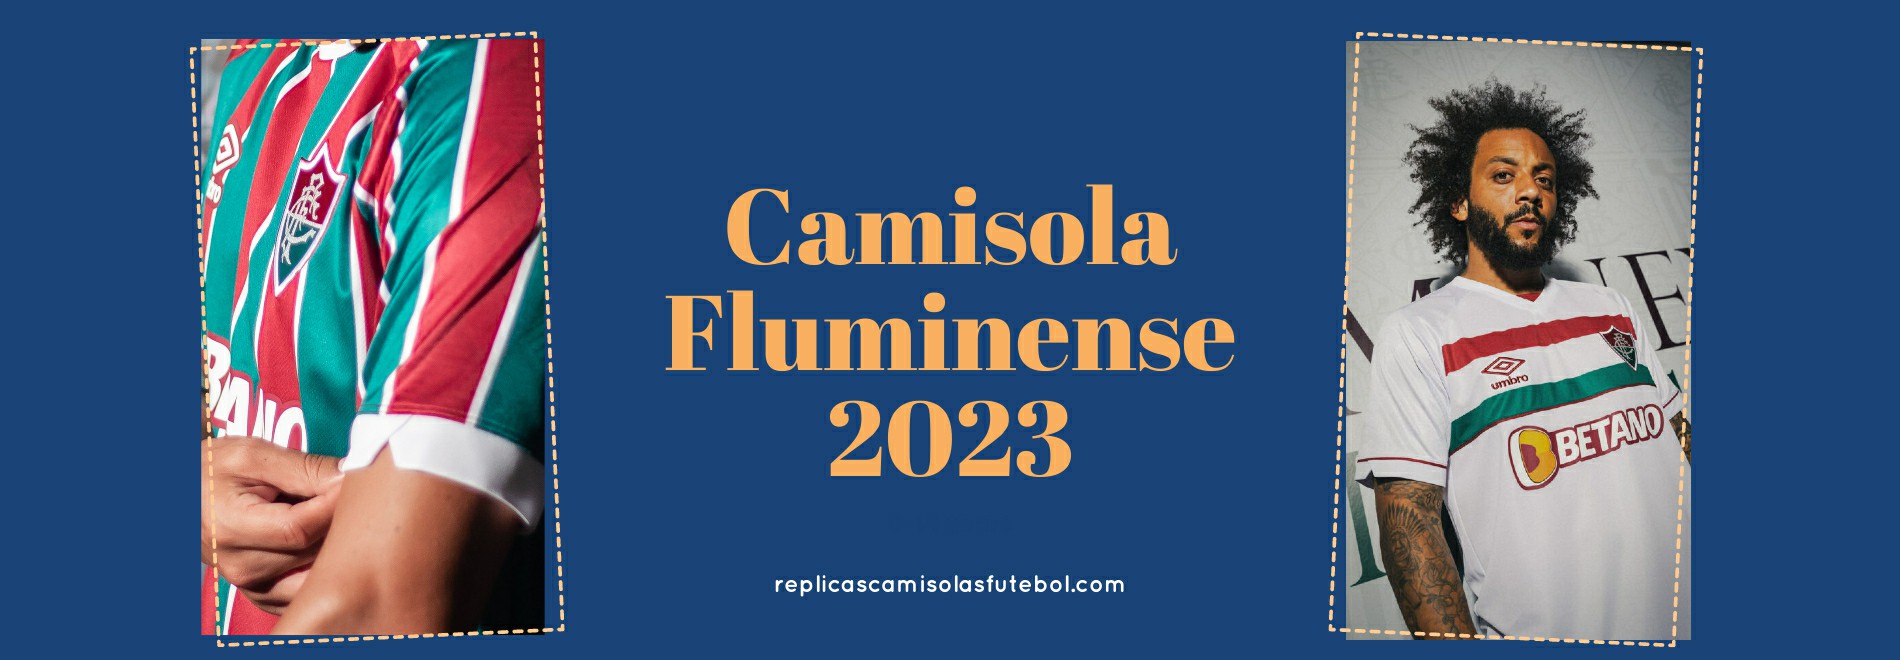 Camisola Fluminense 2023-2024